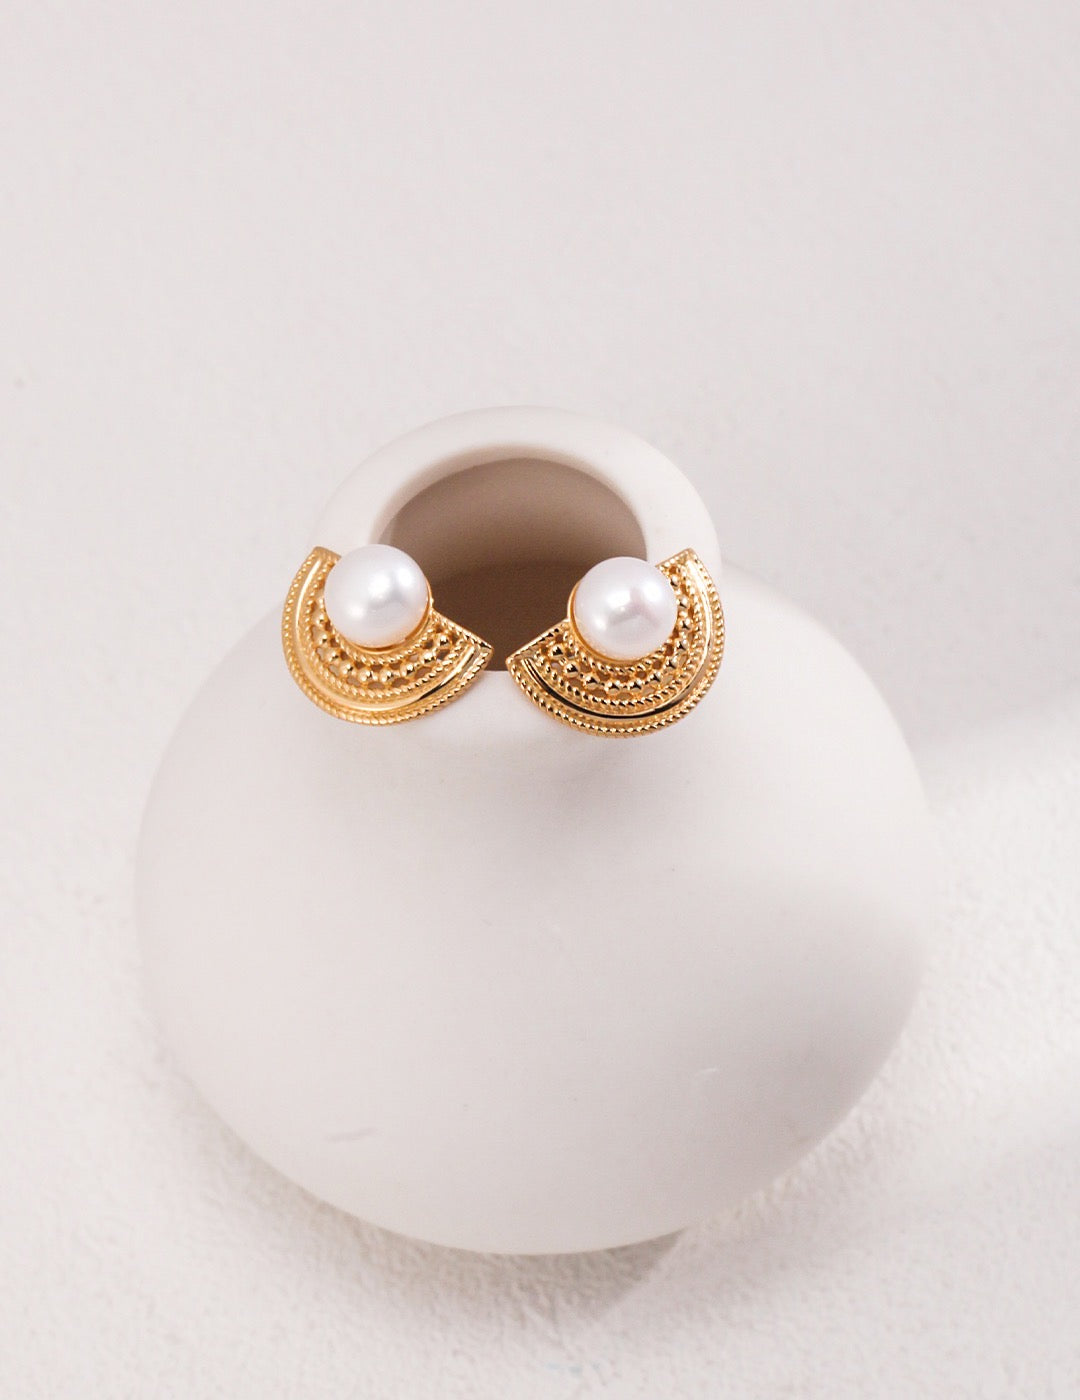 Scalloped French Style Pearl Earrings | Estincele Jewellery | women's earrings